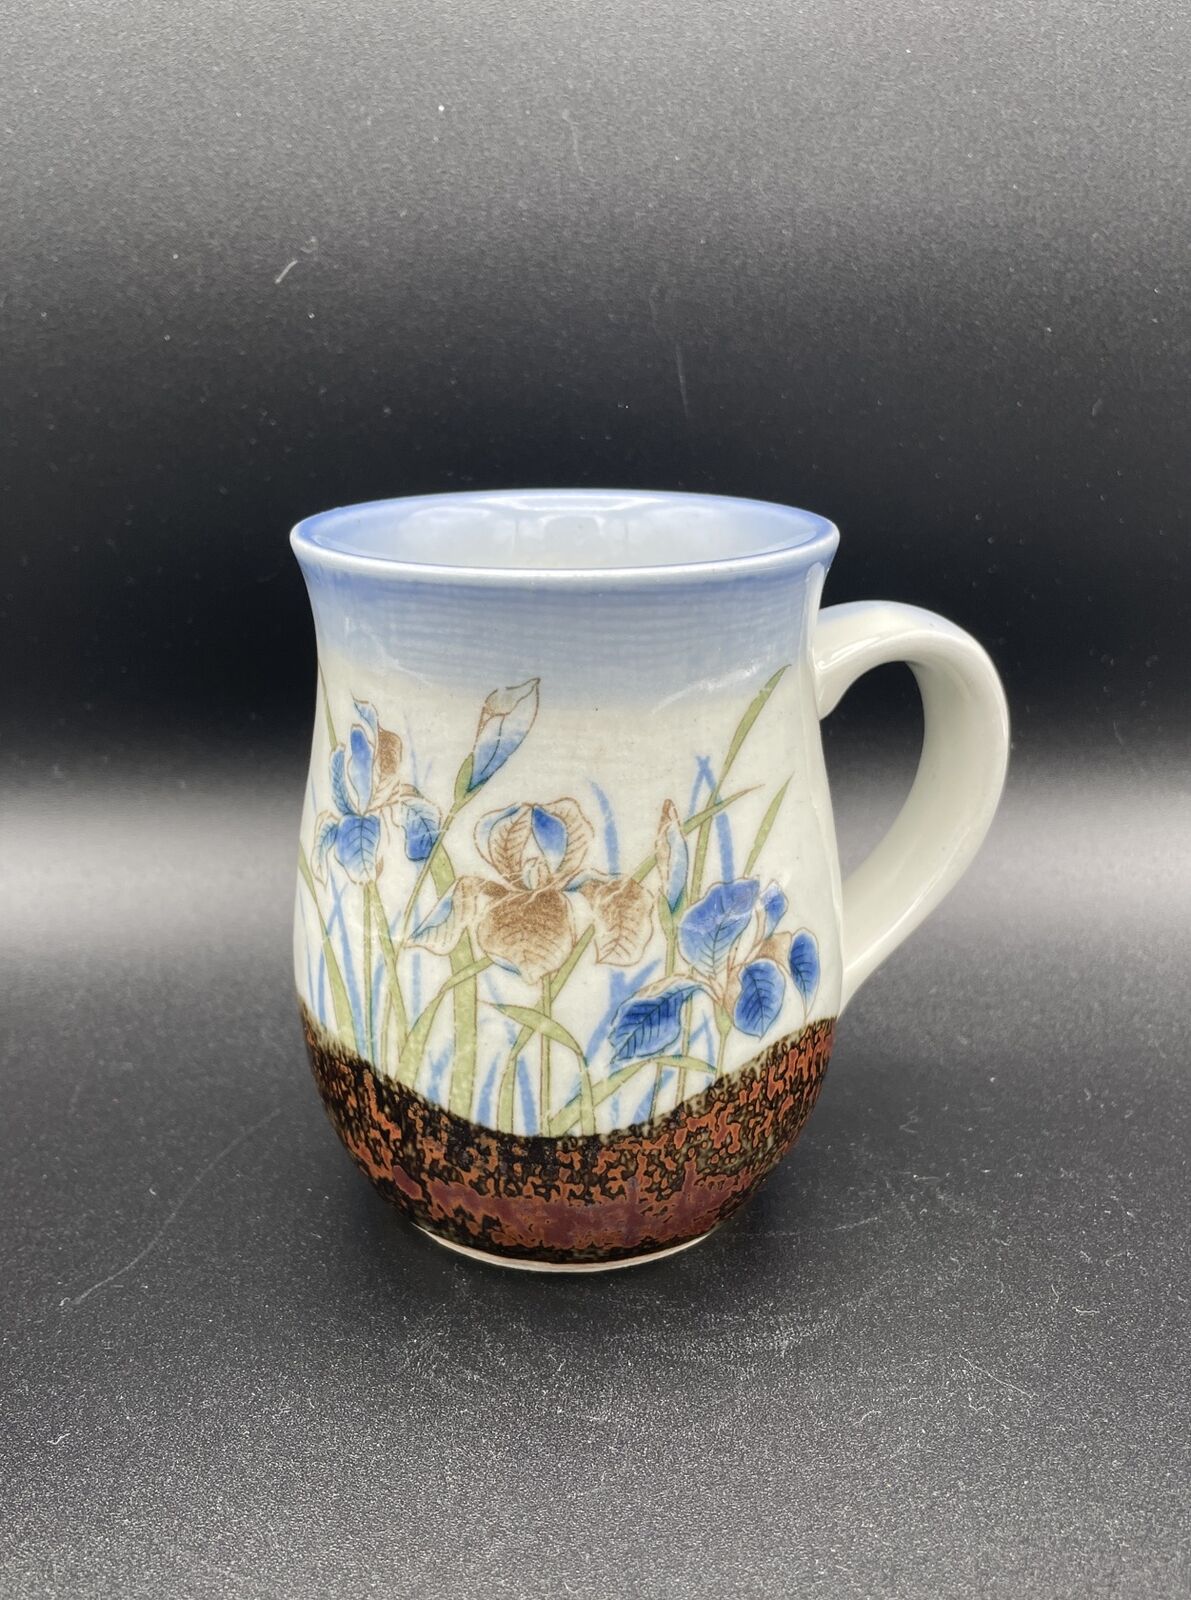 Vintage Otagiri Mug Blue Iris Flowers Hand Painted Floral Japan Stoneware Mug